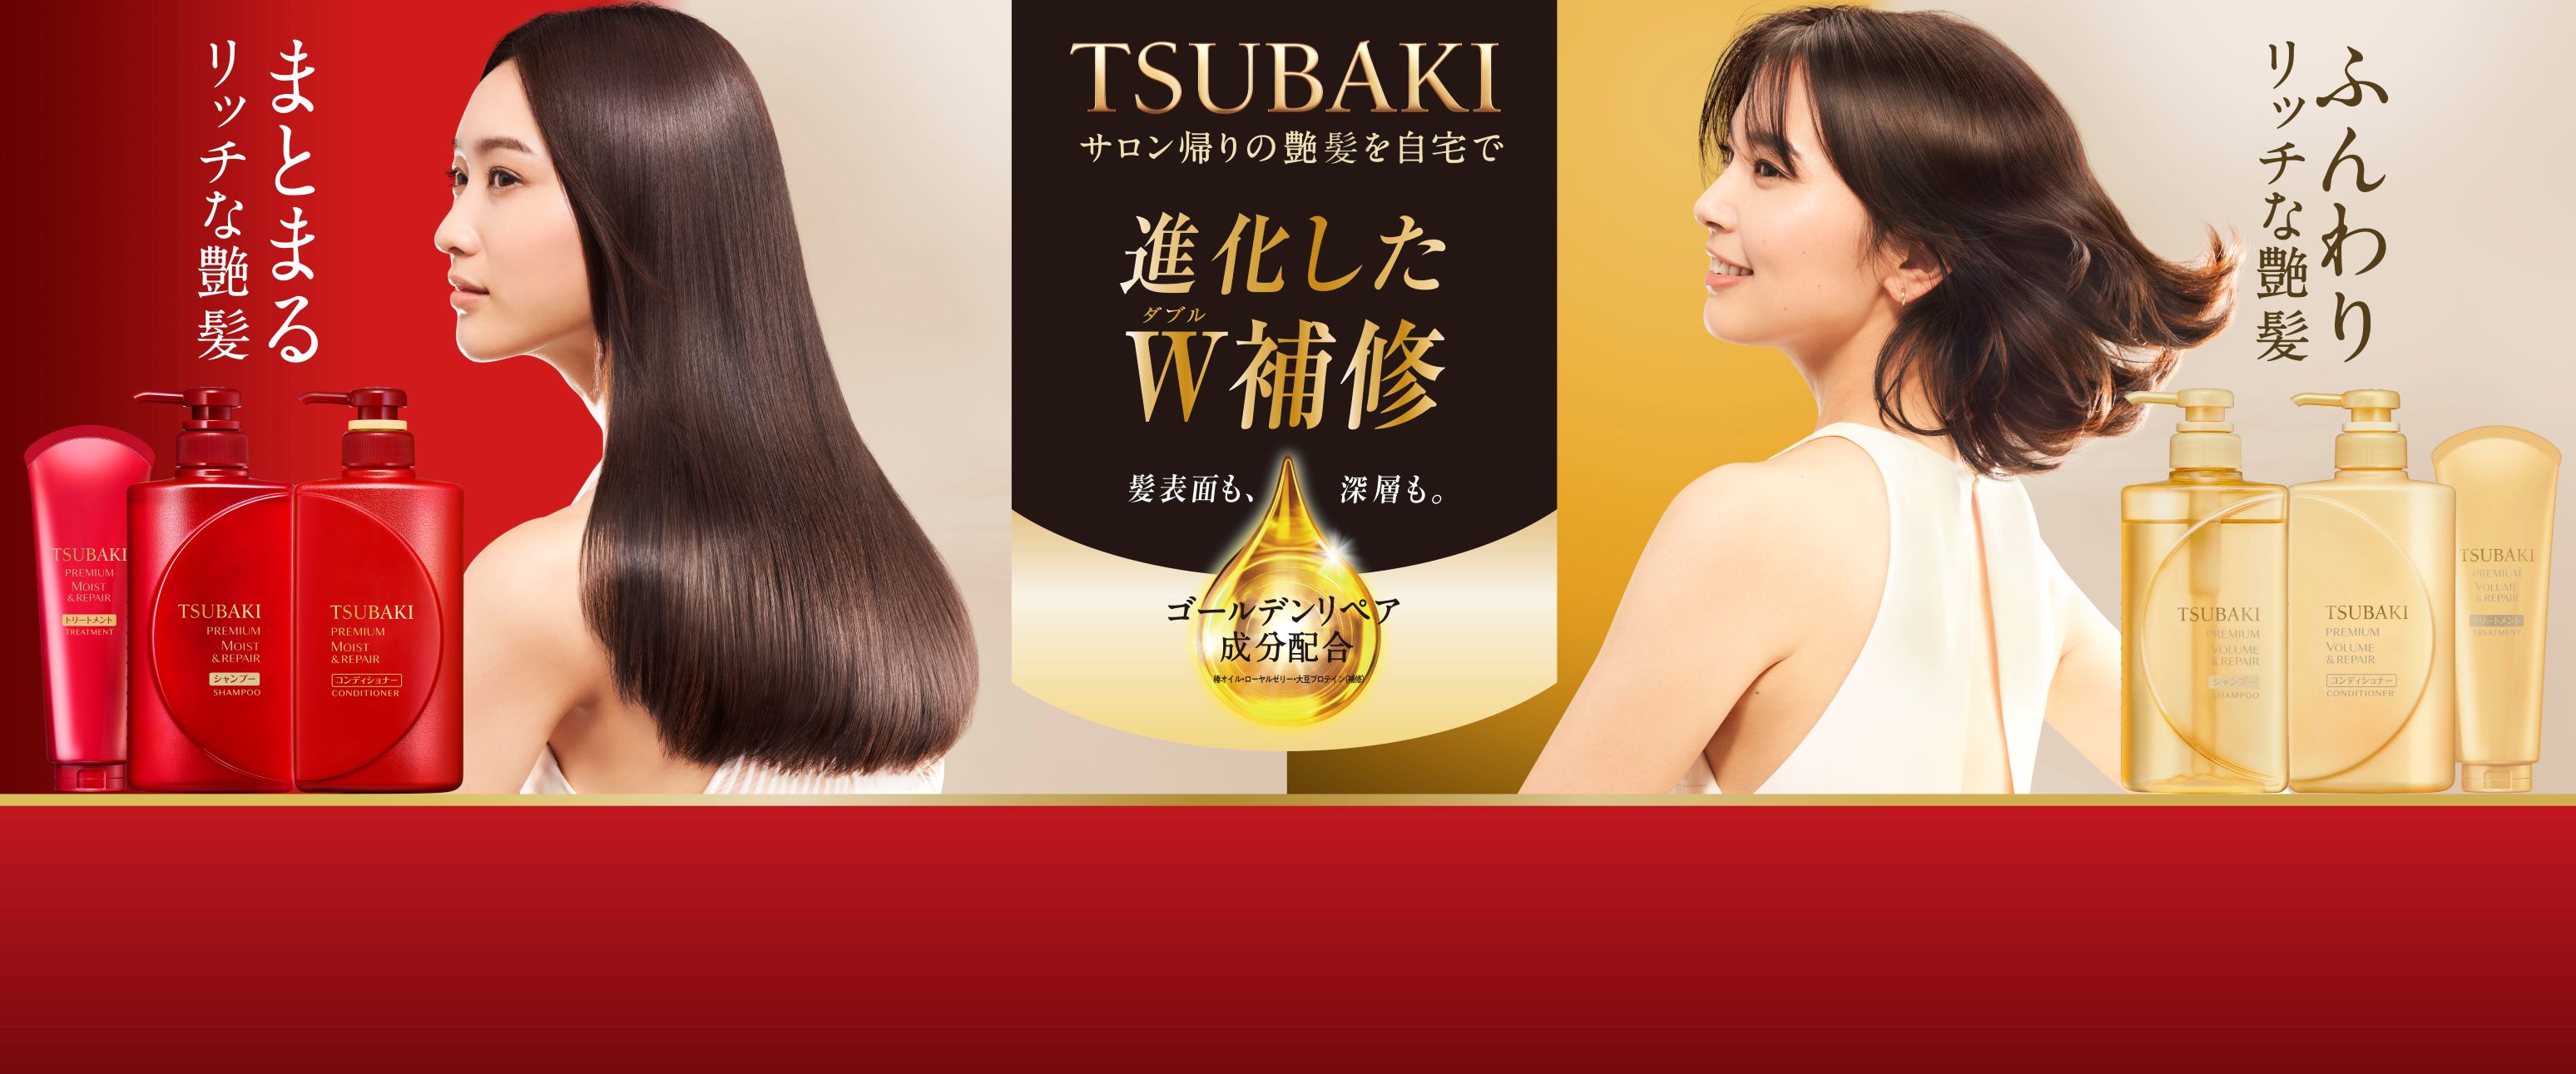 この秋、TSUBAKIシリーズが変わる（※1） TSUBAKI ベーシックシリーズがアップグレード | 美ST ONLINE |  美しい40代・50代のための美容情報サイト